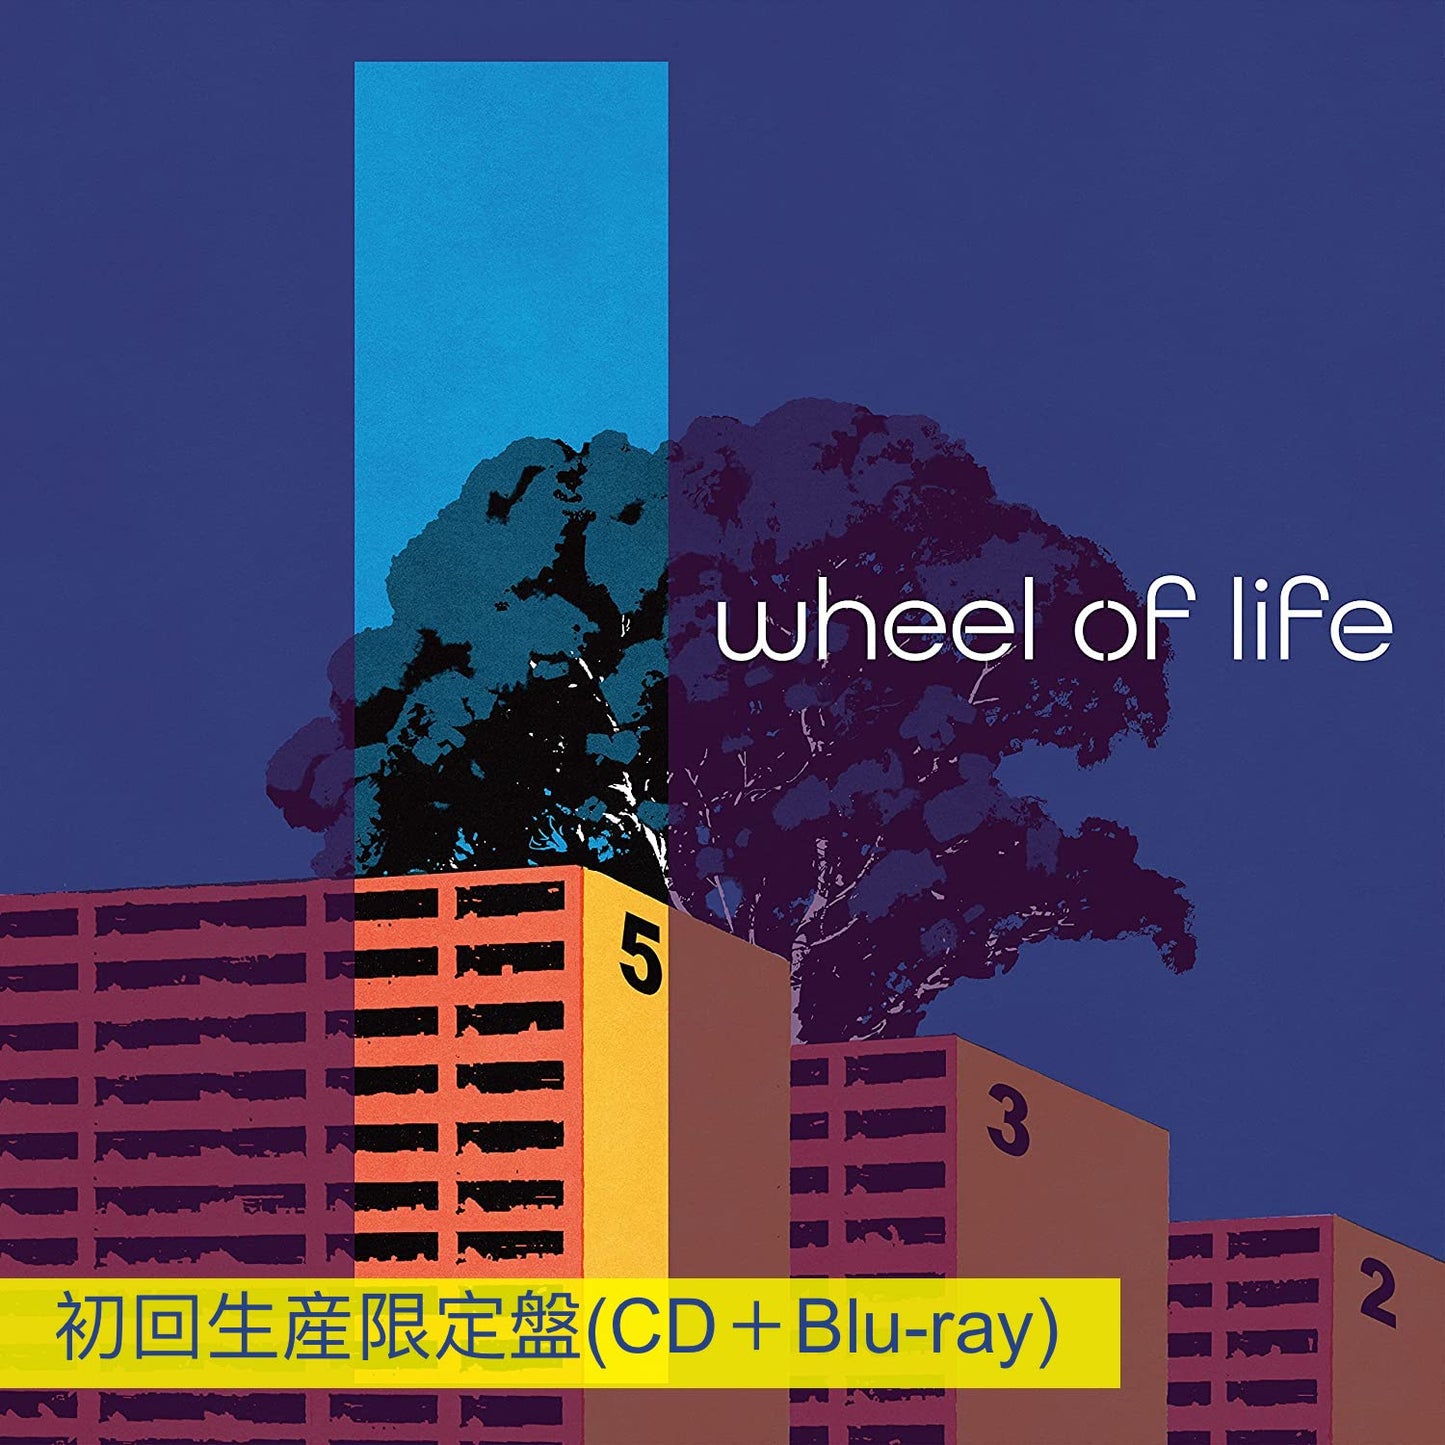 マカロニえんぴつ (Macaroni Empitsu) 第3張EP《wheel of life》日劇「如果能說100萬次就好了」主題曲